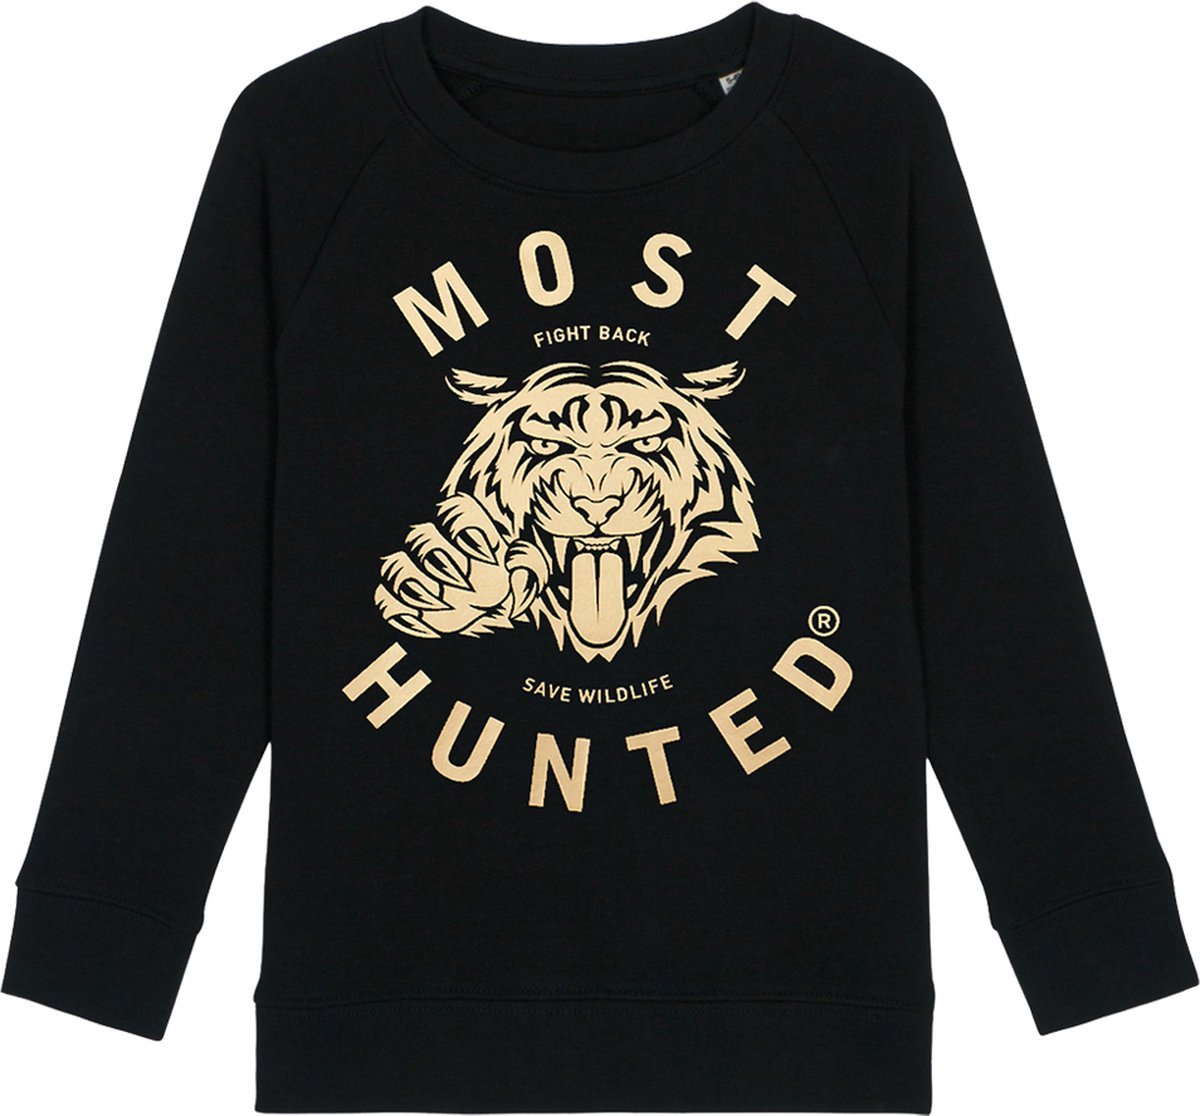 Most Hunted - kinder sweater - tijger - zwart - goud - maat 110/116